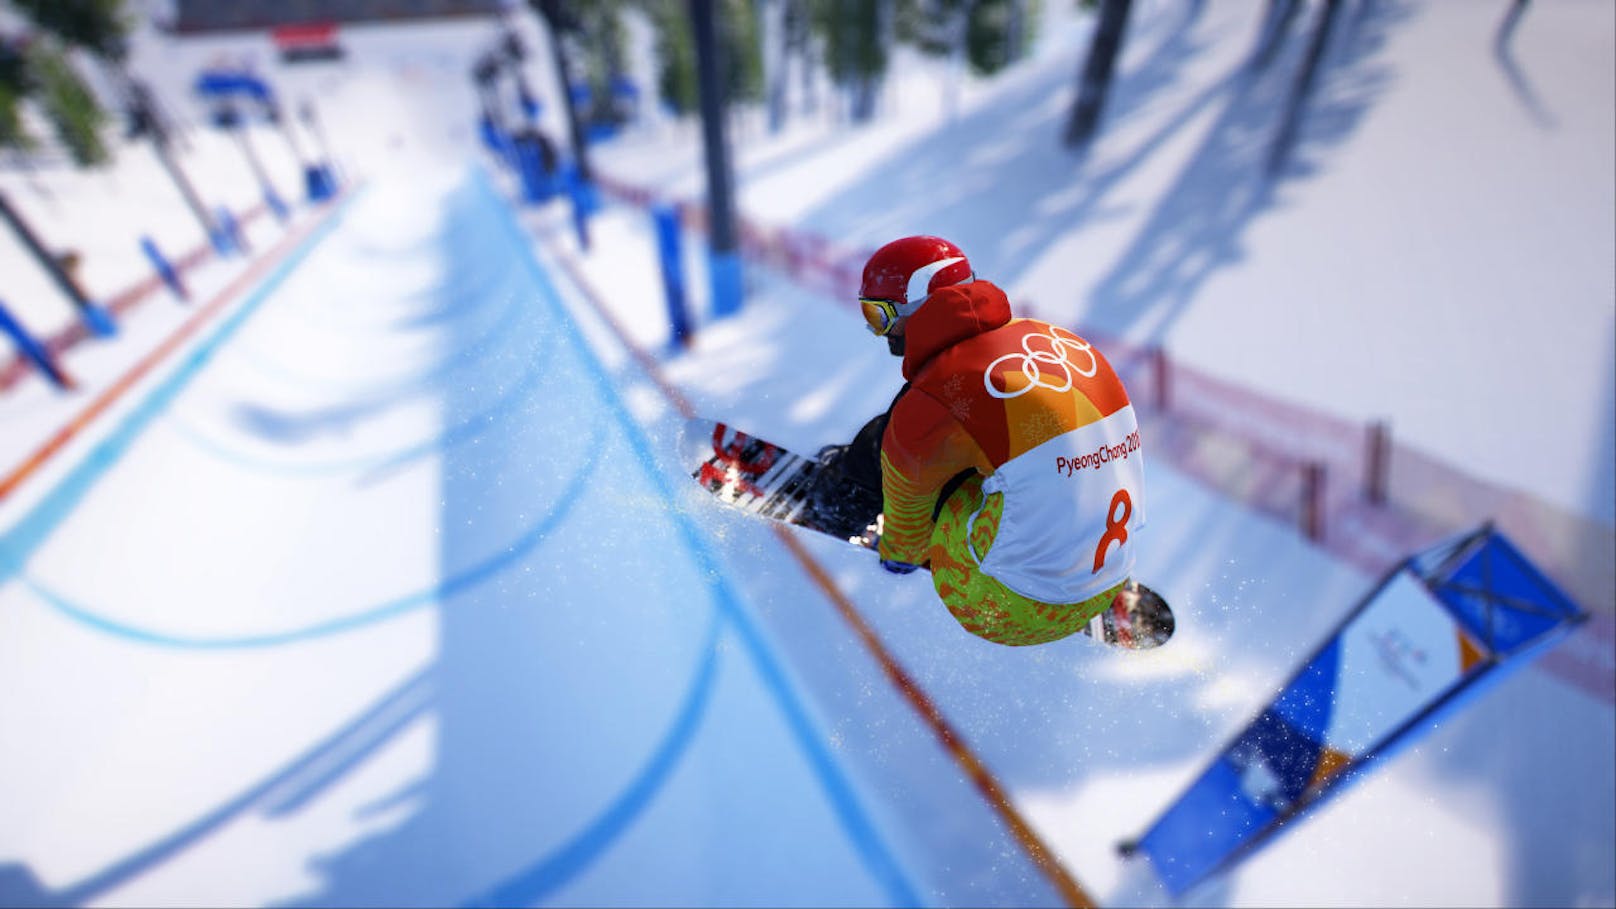 An Experten und generell dem Sport hat man nicht gespart, das Spiel ist offizieller Partner der "Olympischen Winterspiele PyeongChang 2018".